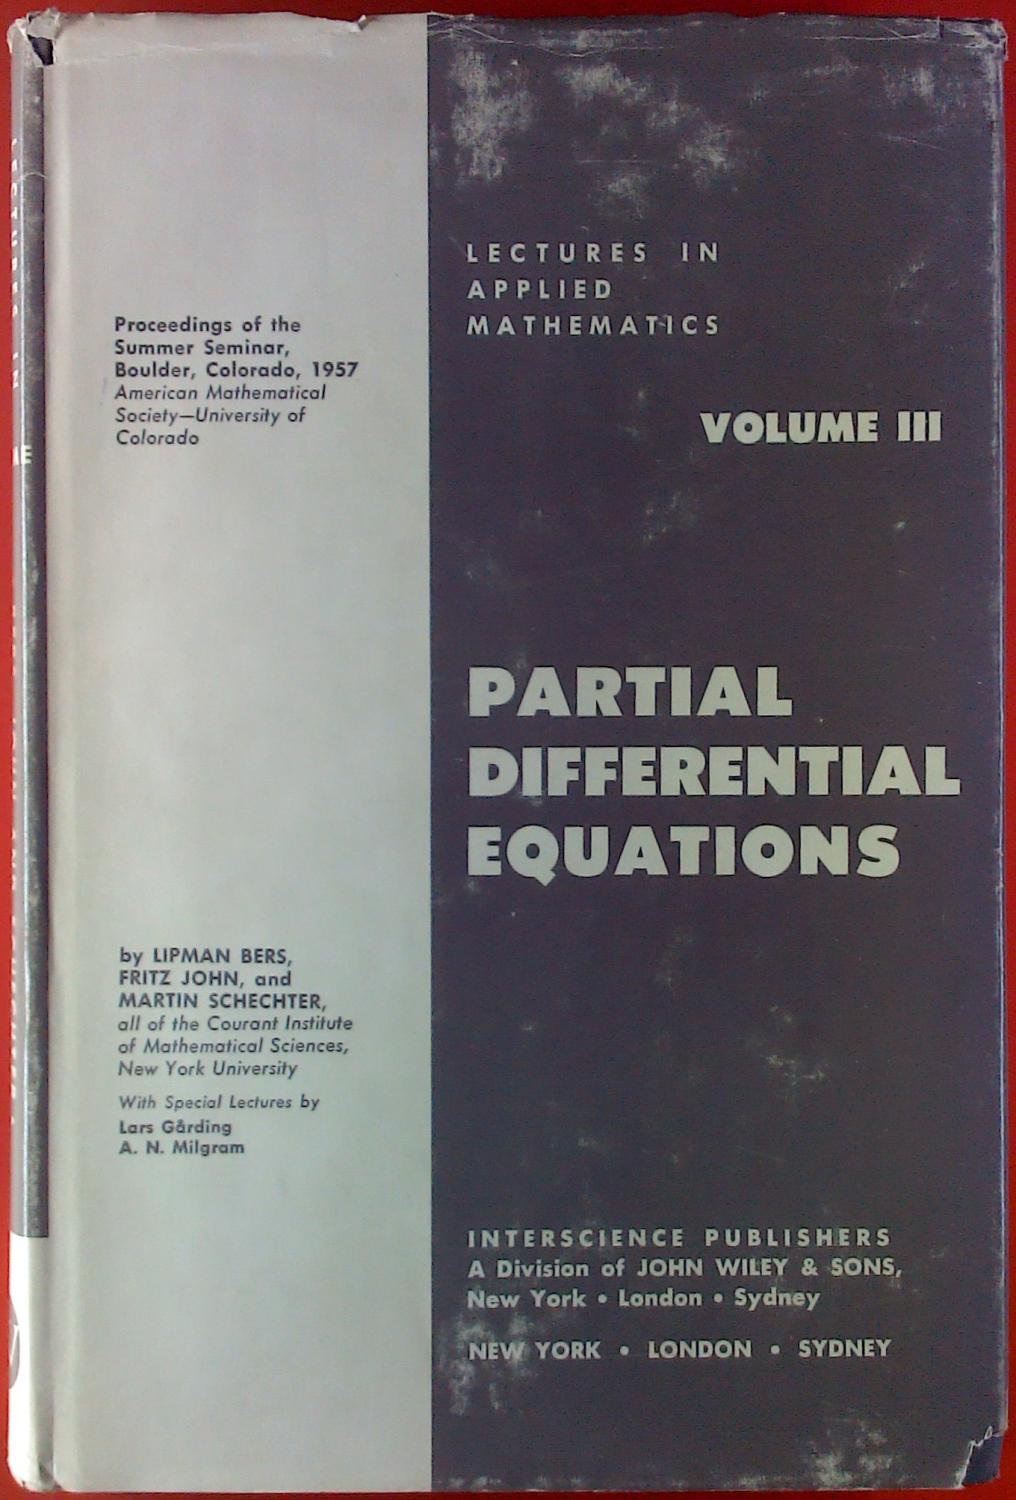 Partial Differential Equations. VOLUME III - Lipman Bers, Fritz John, Martin Schechter